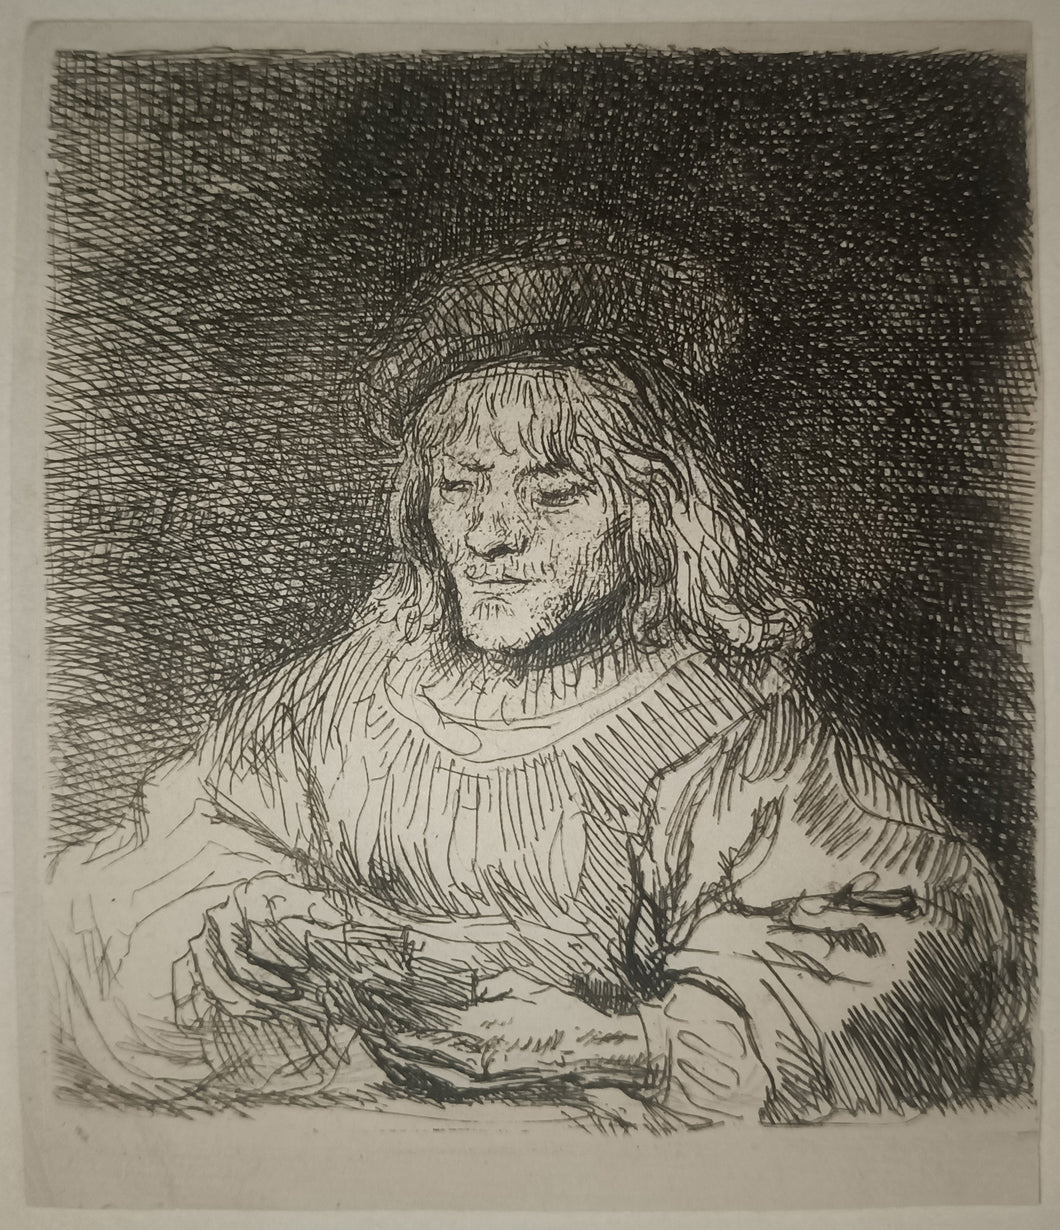 Le joueur de carte, 1641